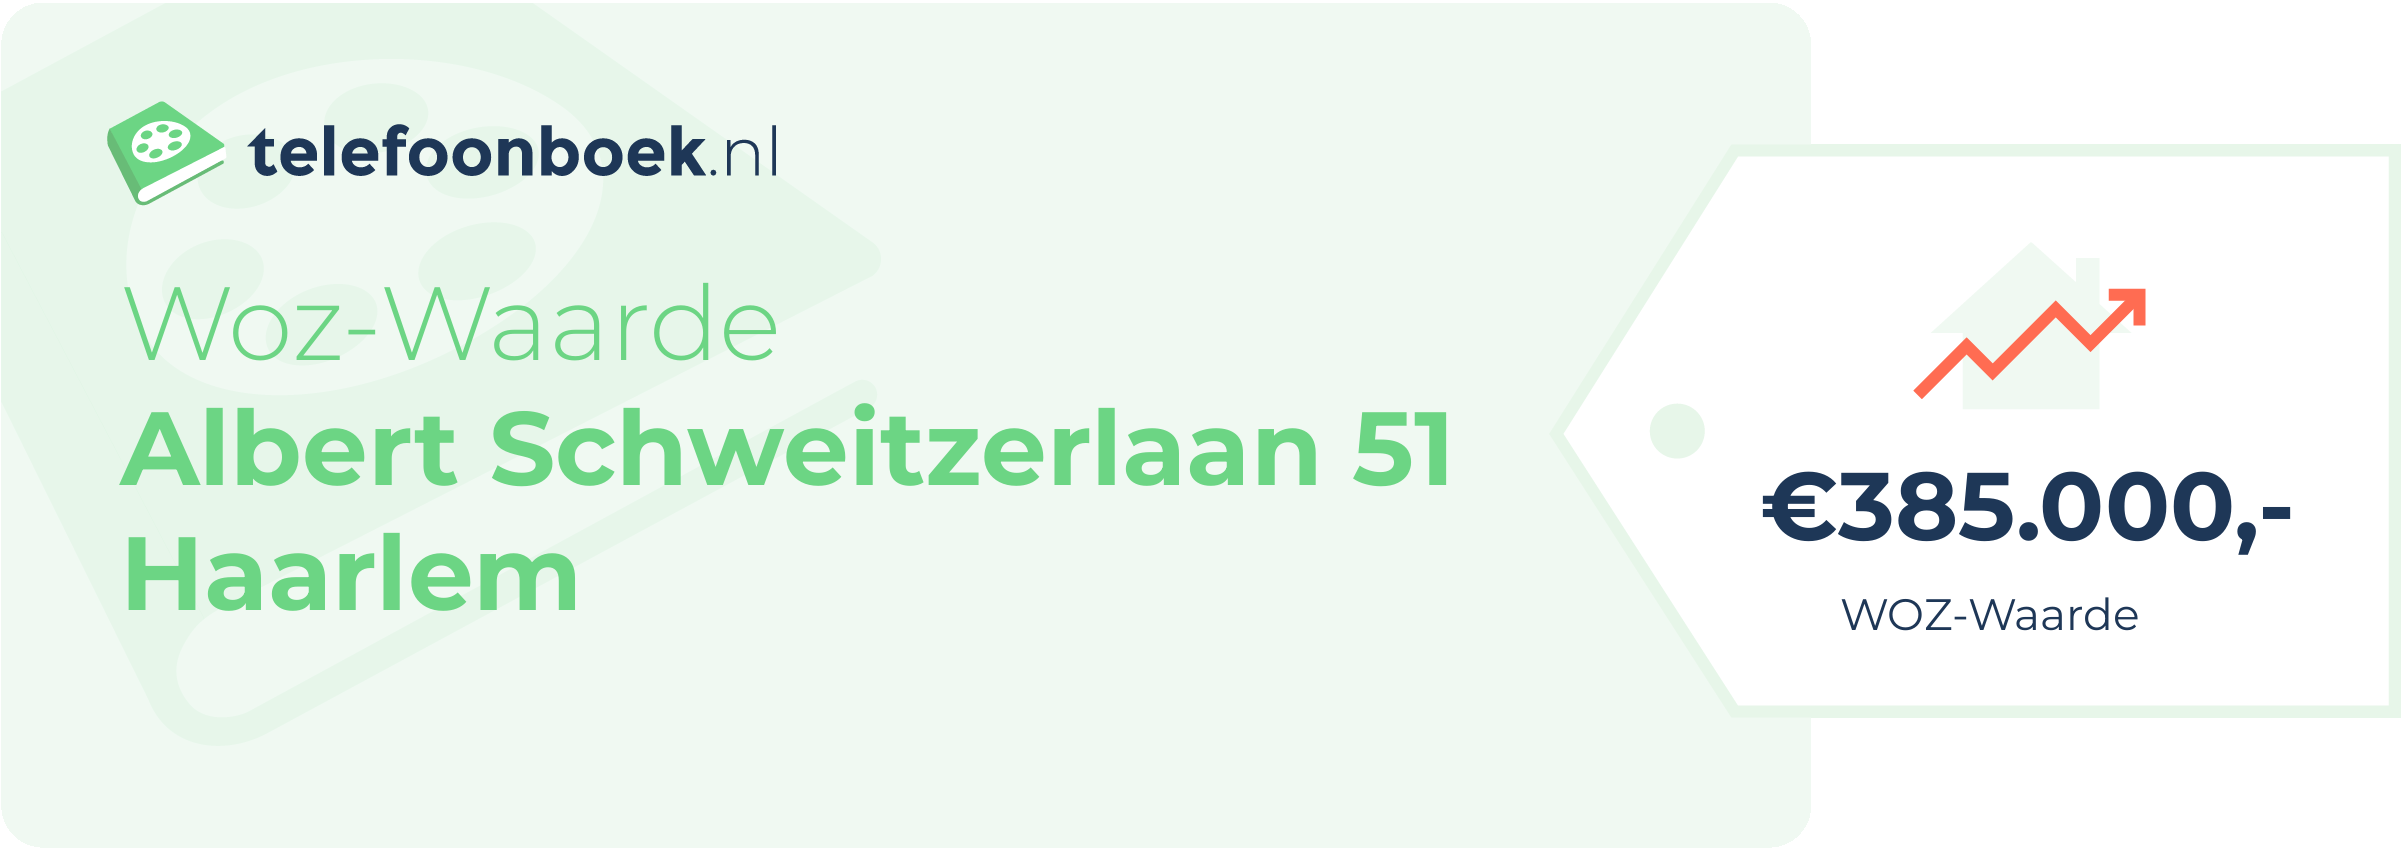 WOZ-waarde Albert Schweitzerlaan 51 Haarlem